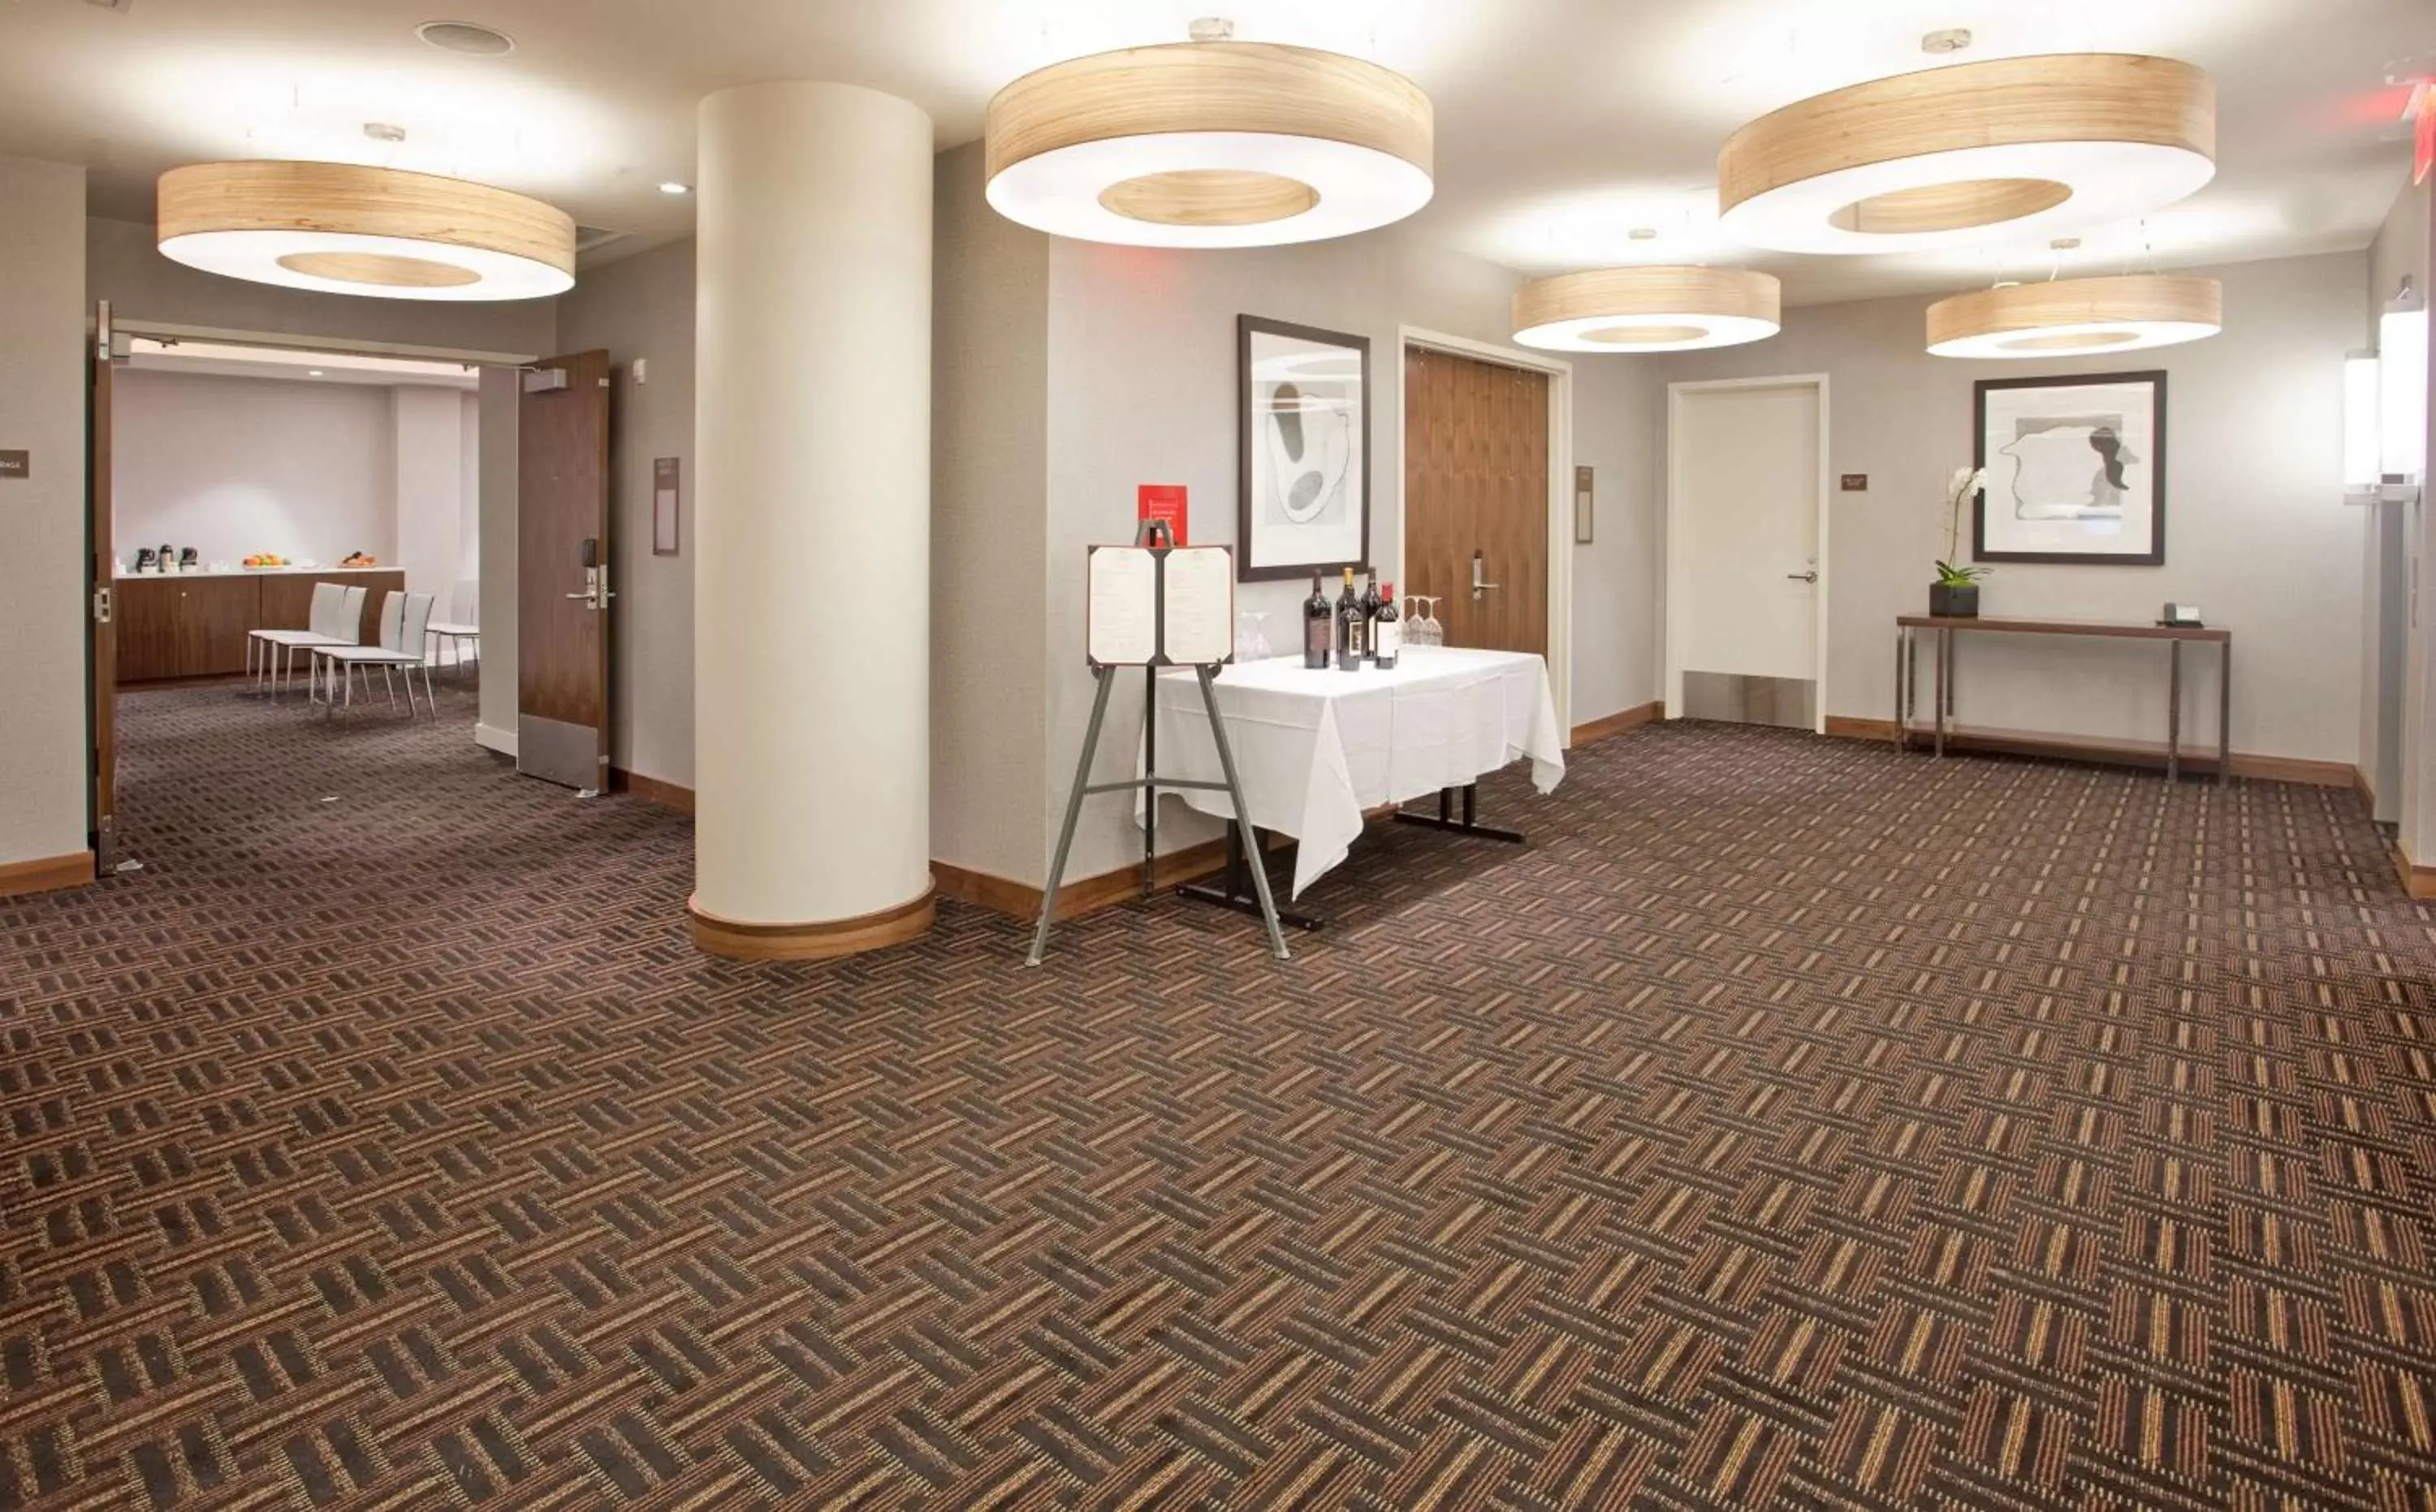 Lobby or reception in Hilton Garden Inn New York Central Park South-Midtown West